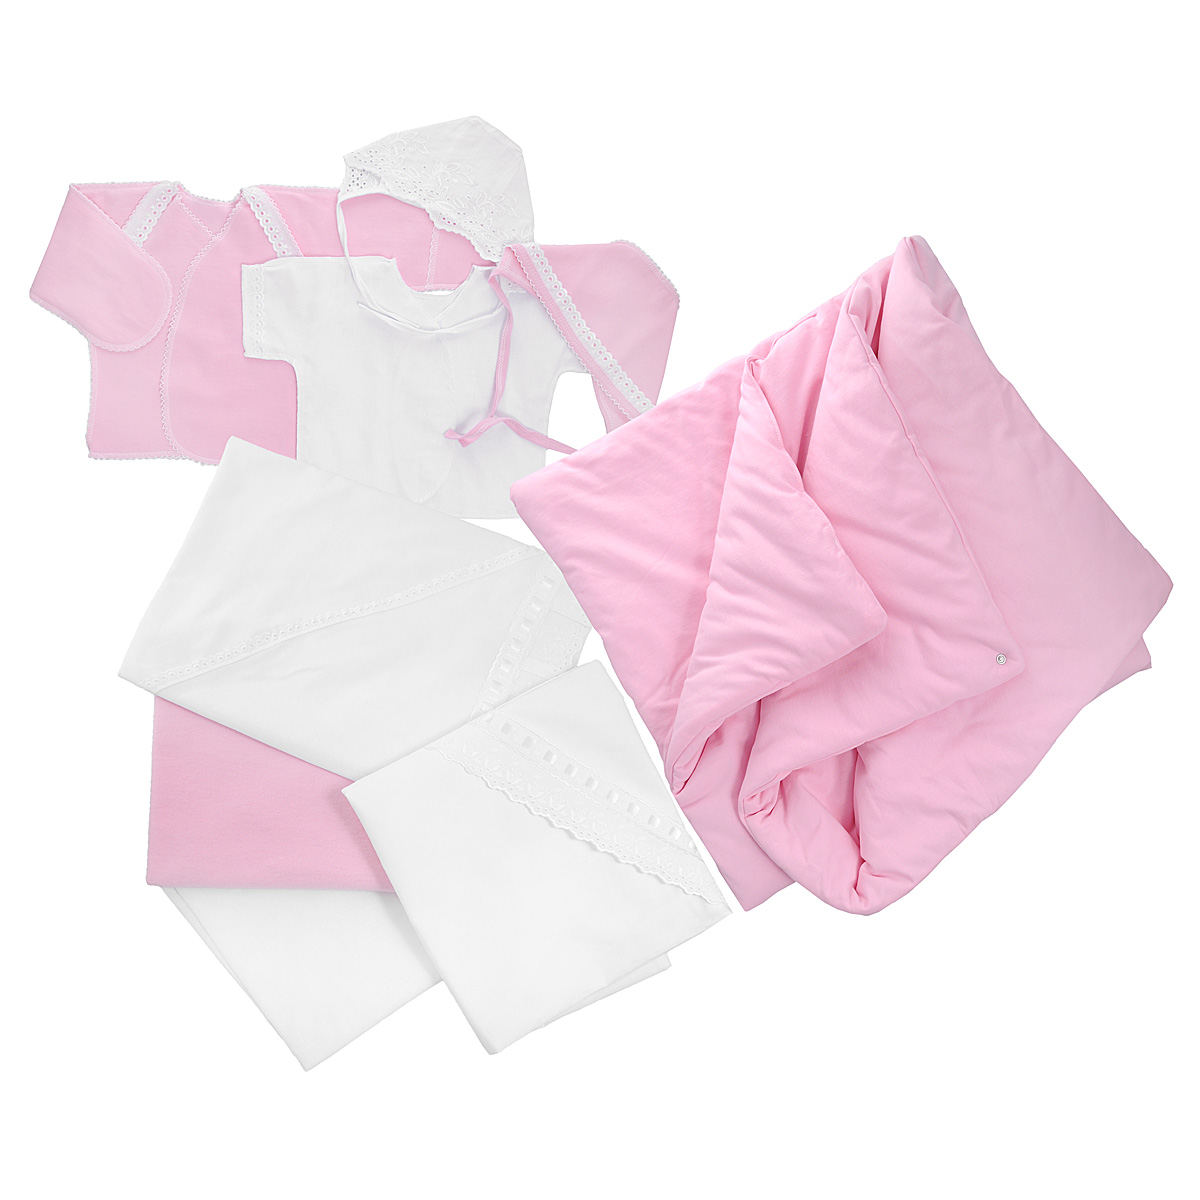 Комплект для новорожденного Трон-Плюс, 9 предметов, цвет: белый, розовый. 3476. Размер 50, 0-1 месяц